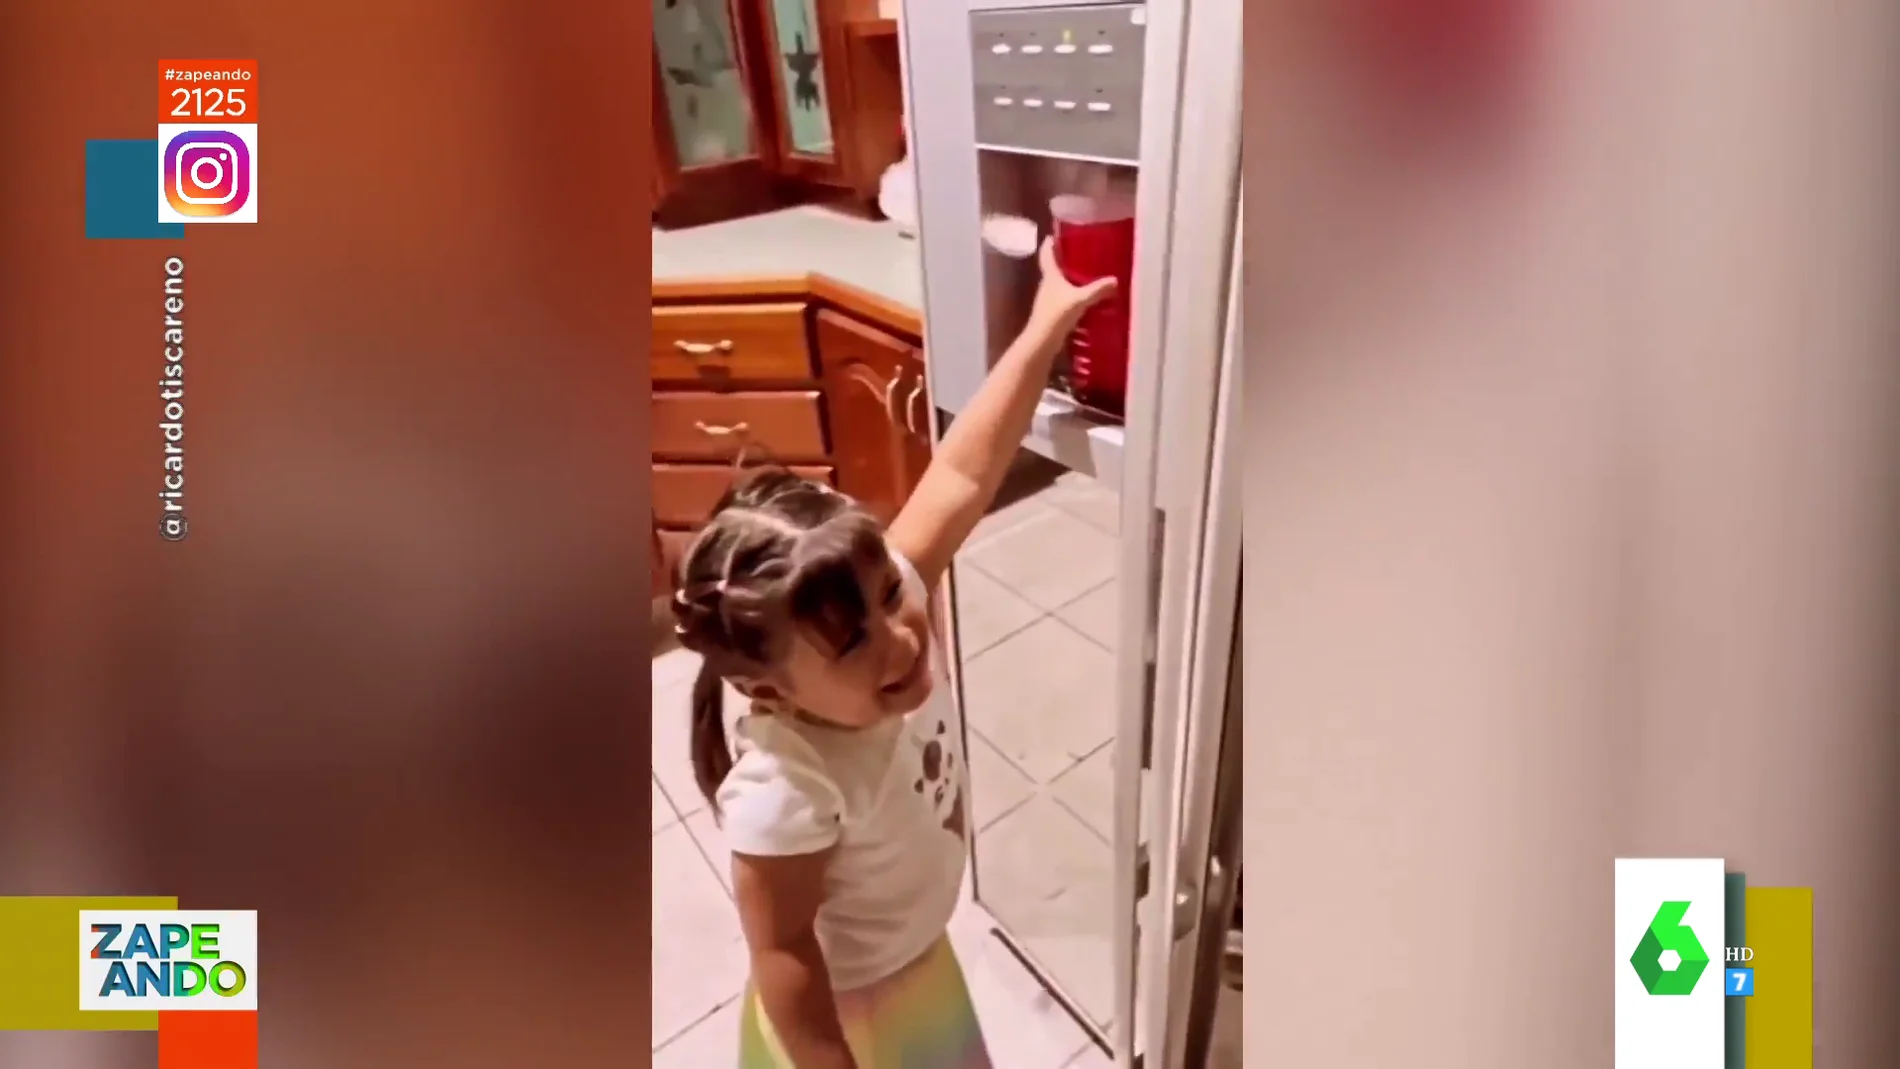 El angustioso momento que vive una niña al no saber parar un dispensador de hielos